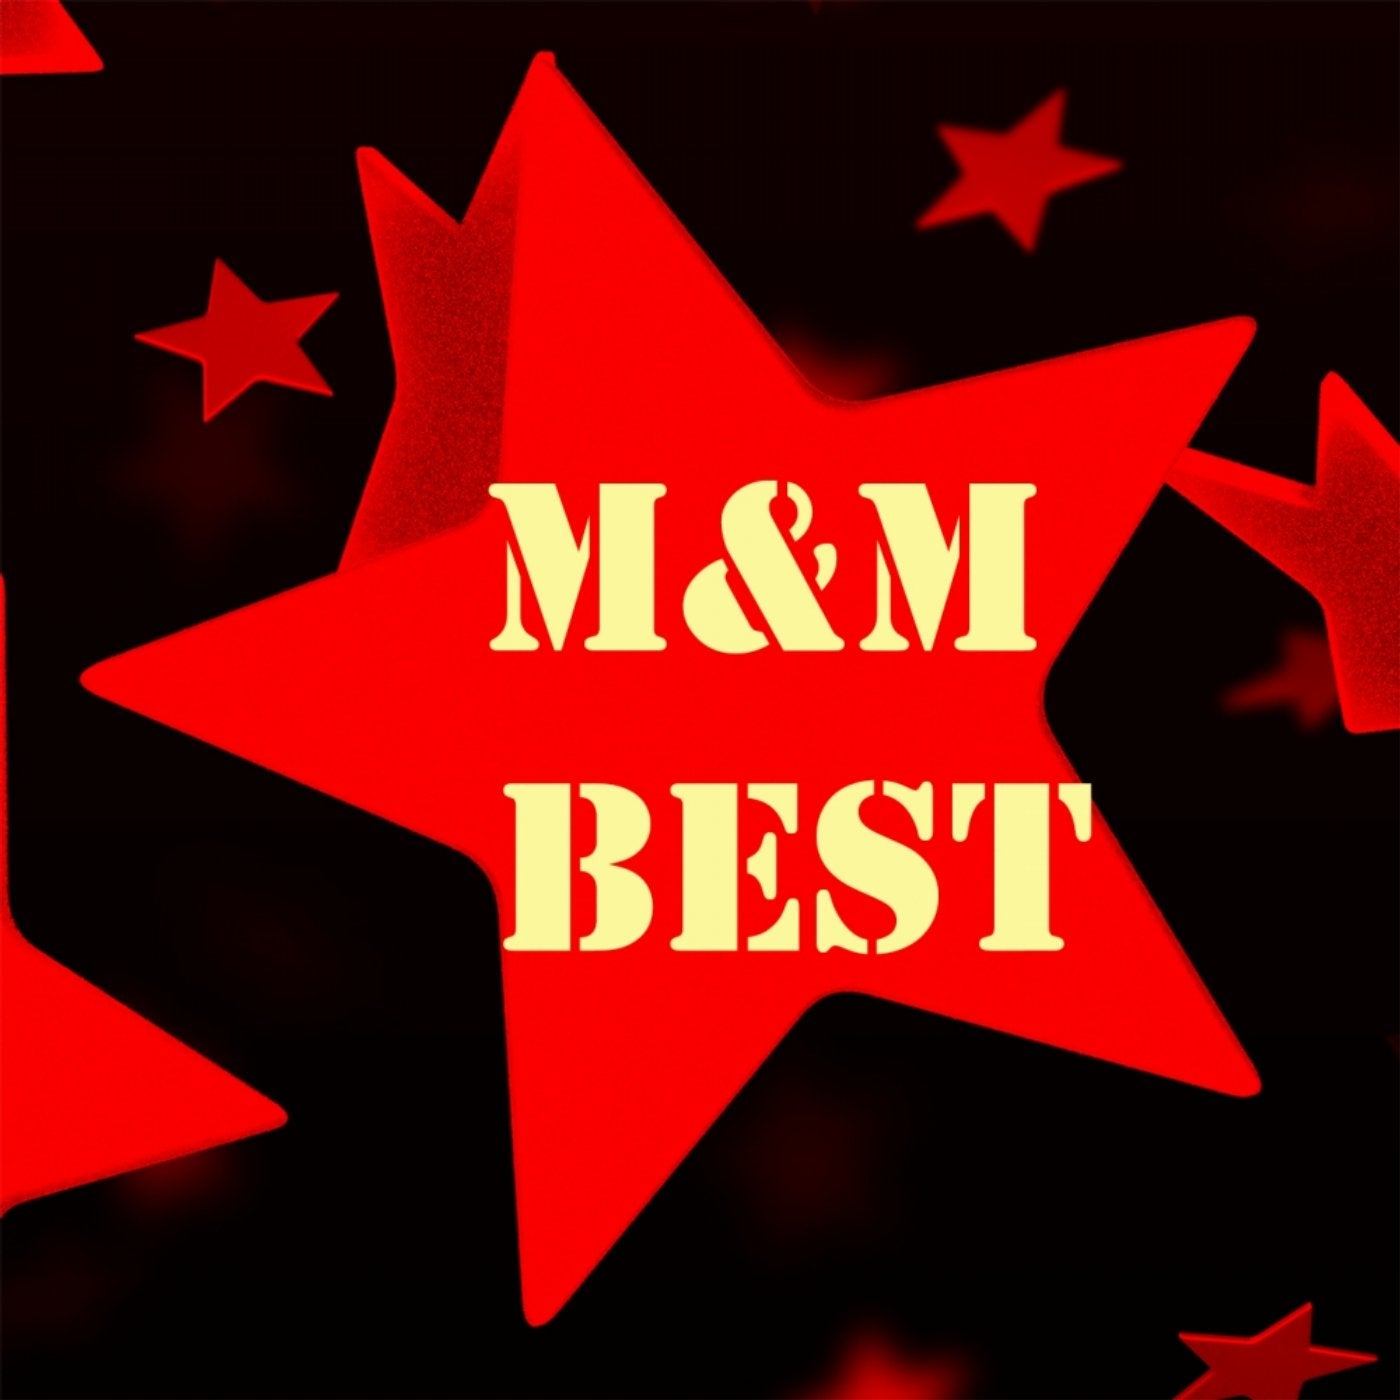 Best M&M